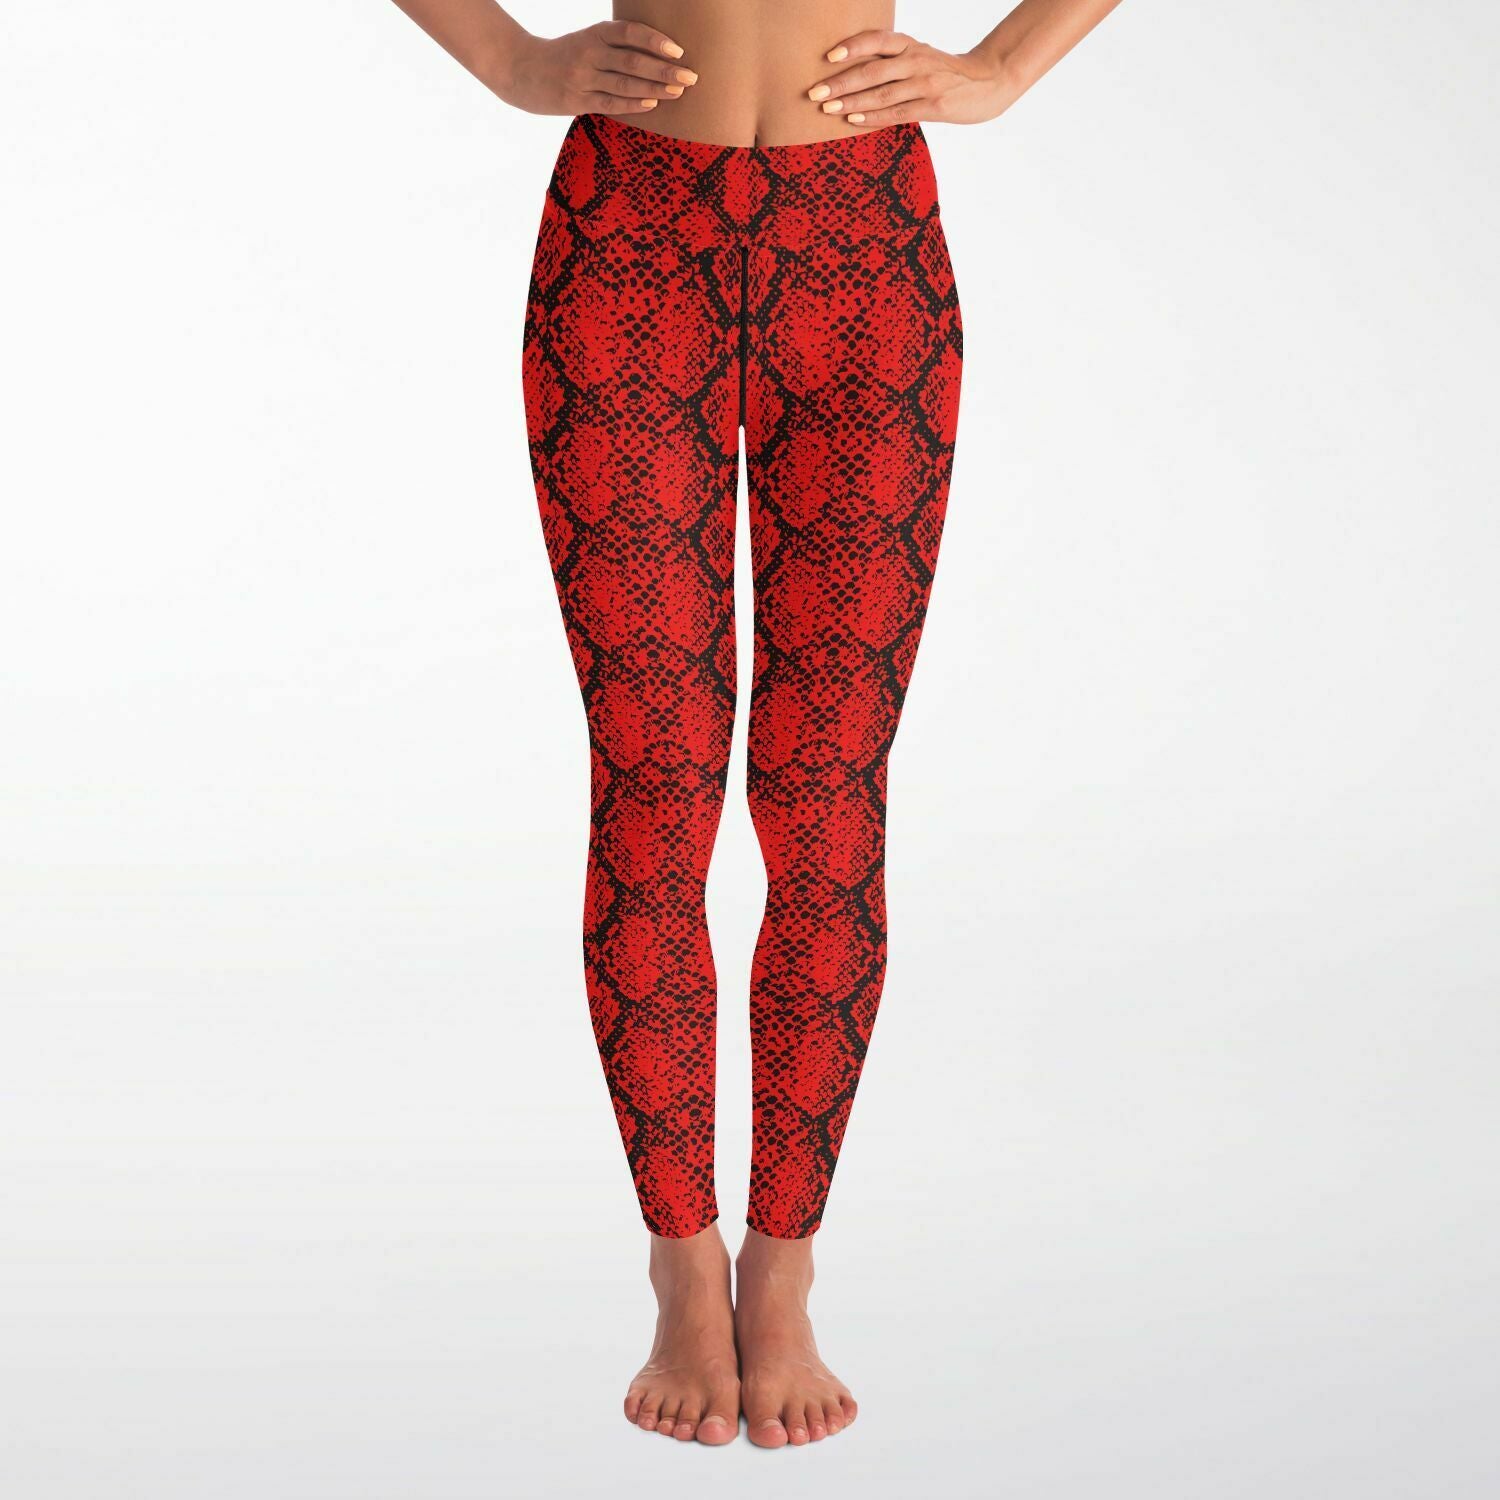 Women's Red Snakeskin Reptile Print High-waisted Yoga Leggings